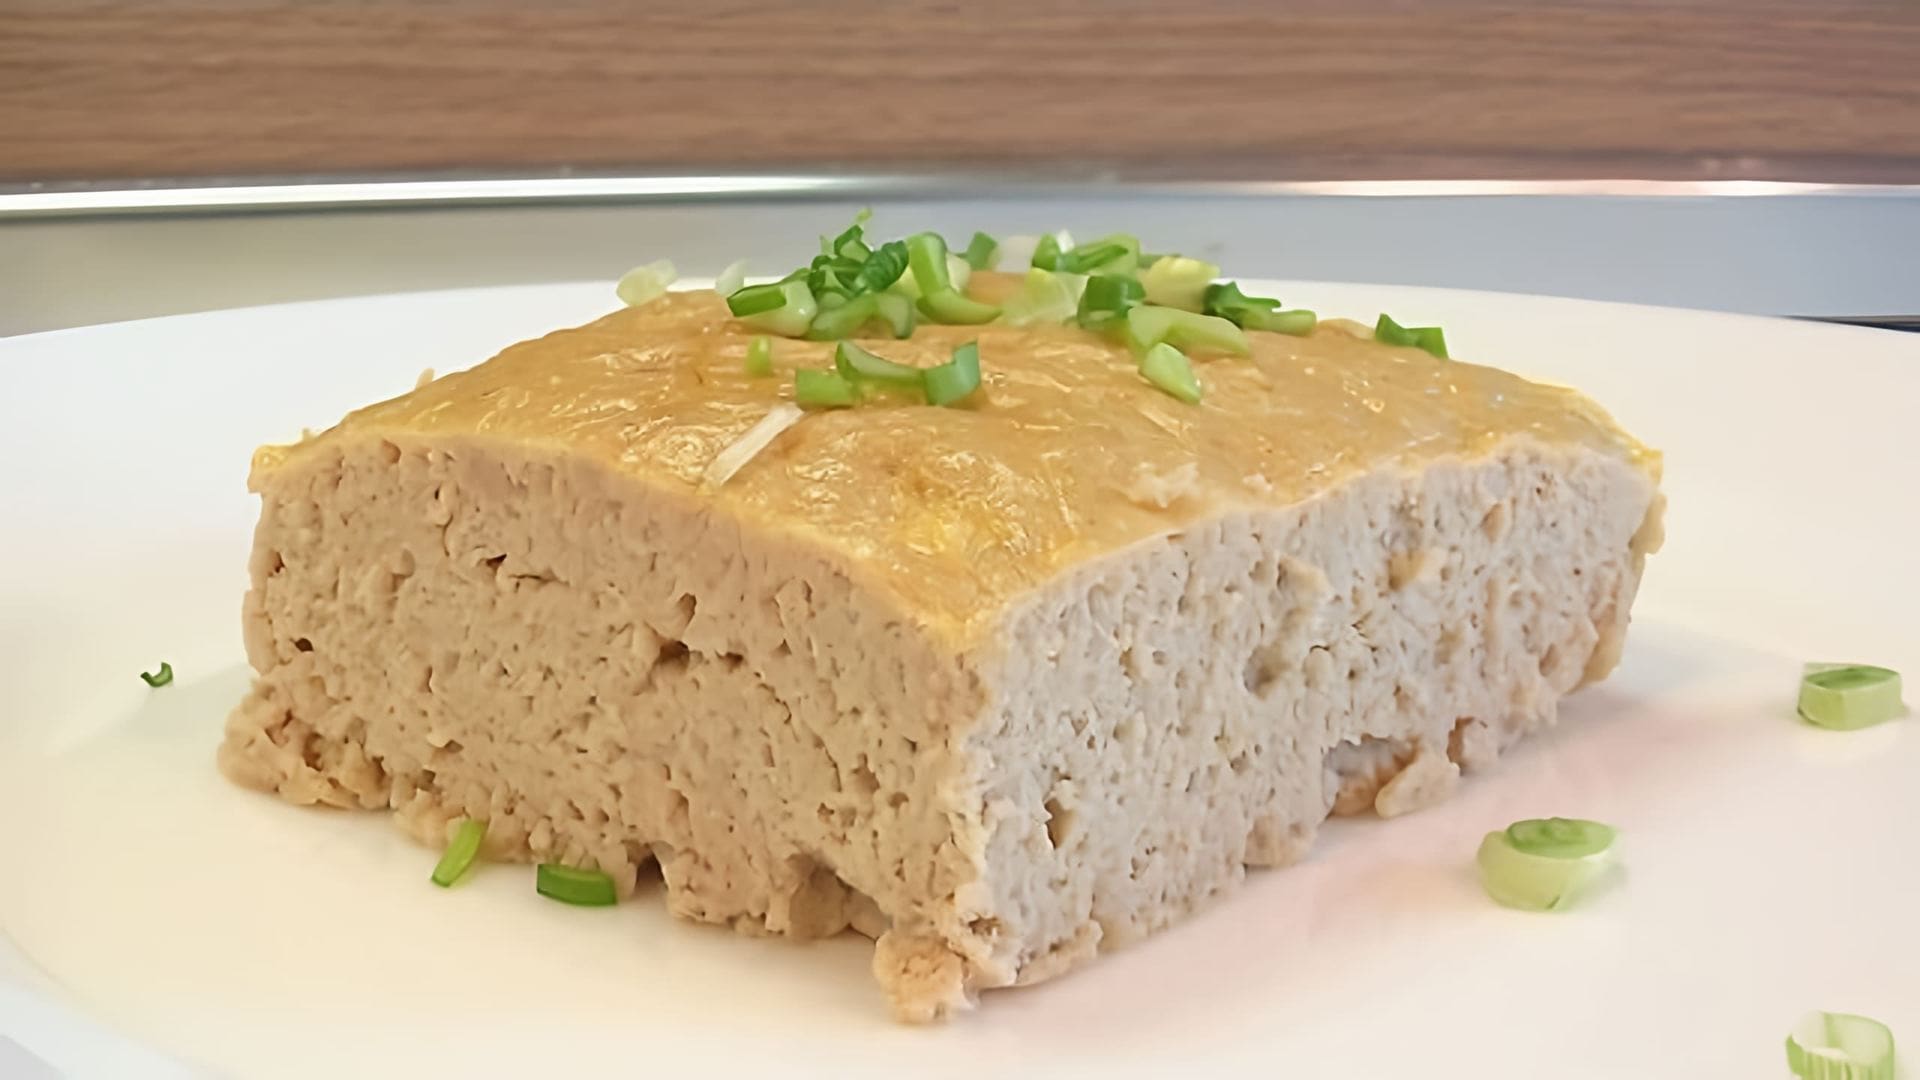 В этом видео демонстрируется рецепт мясного суфле, который был впервые опубликован в книге "О вкусной и здоровой пище" в 1939 году